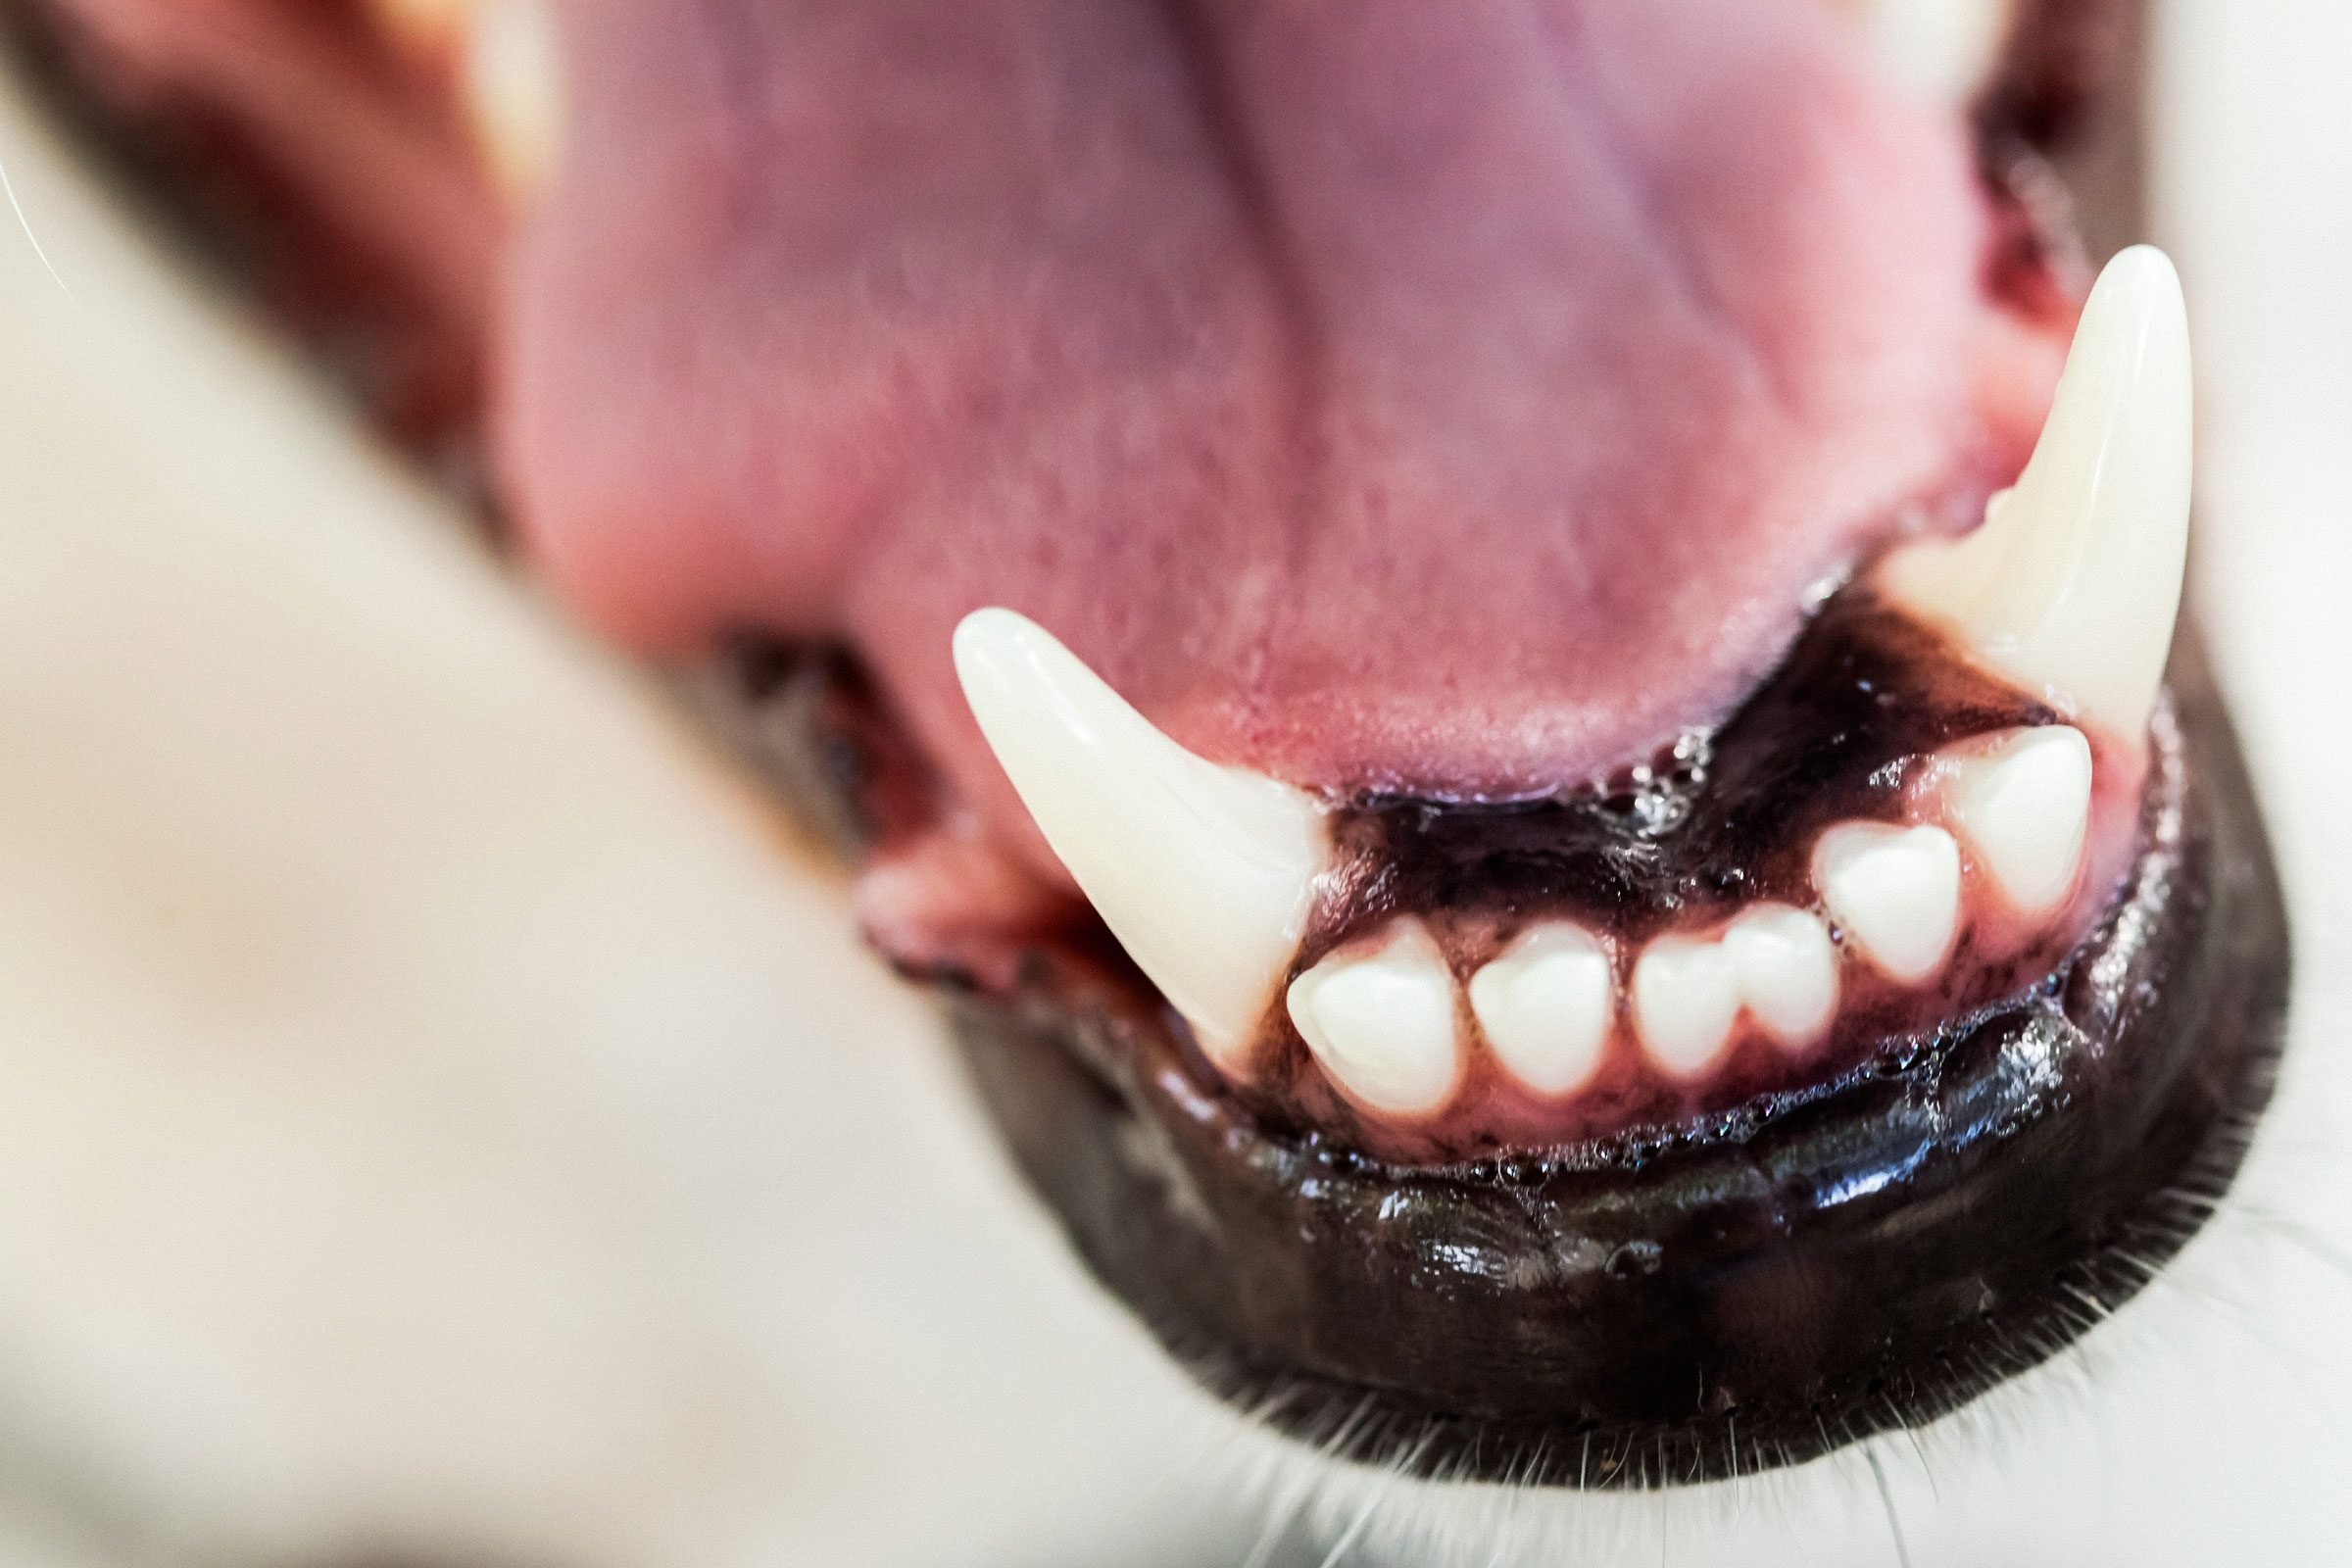 Do dogs' teeth grow back?